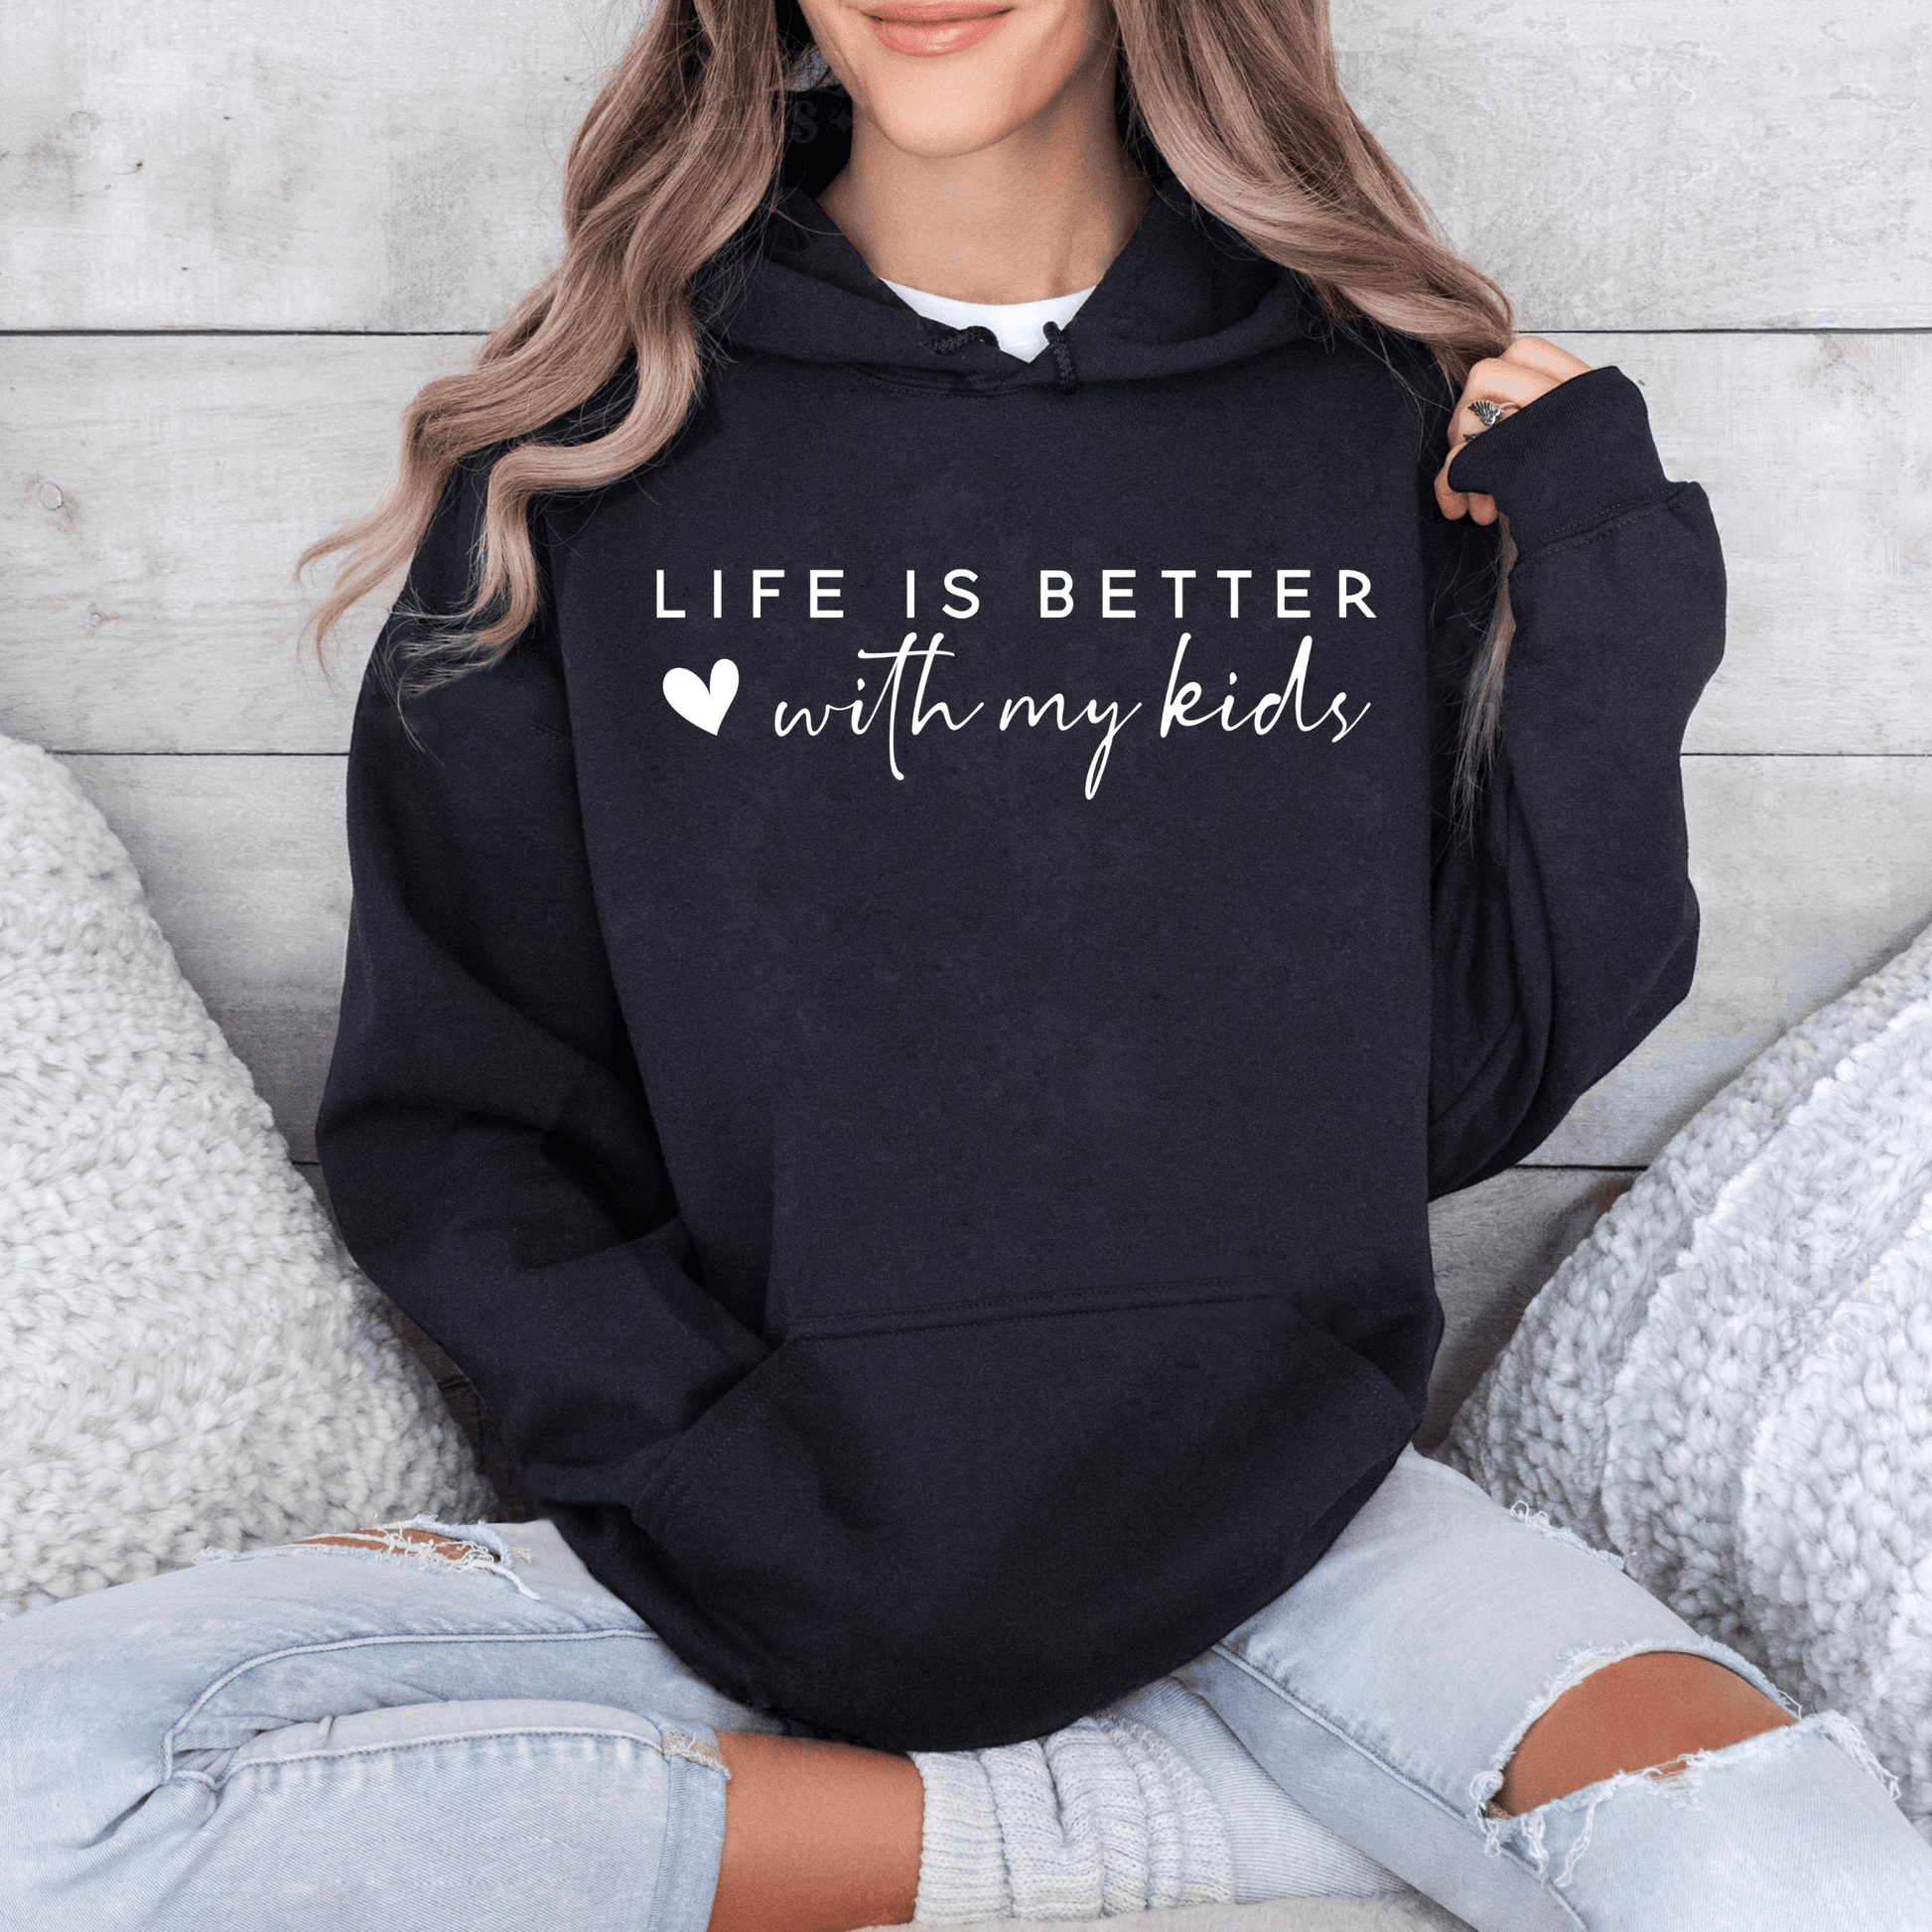 Das Leben ist schöner mit meinen Kindern - Personalisiertes Sweatshirt - Elterngeschenk - GiftHaus